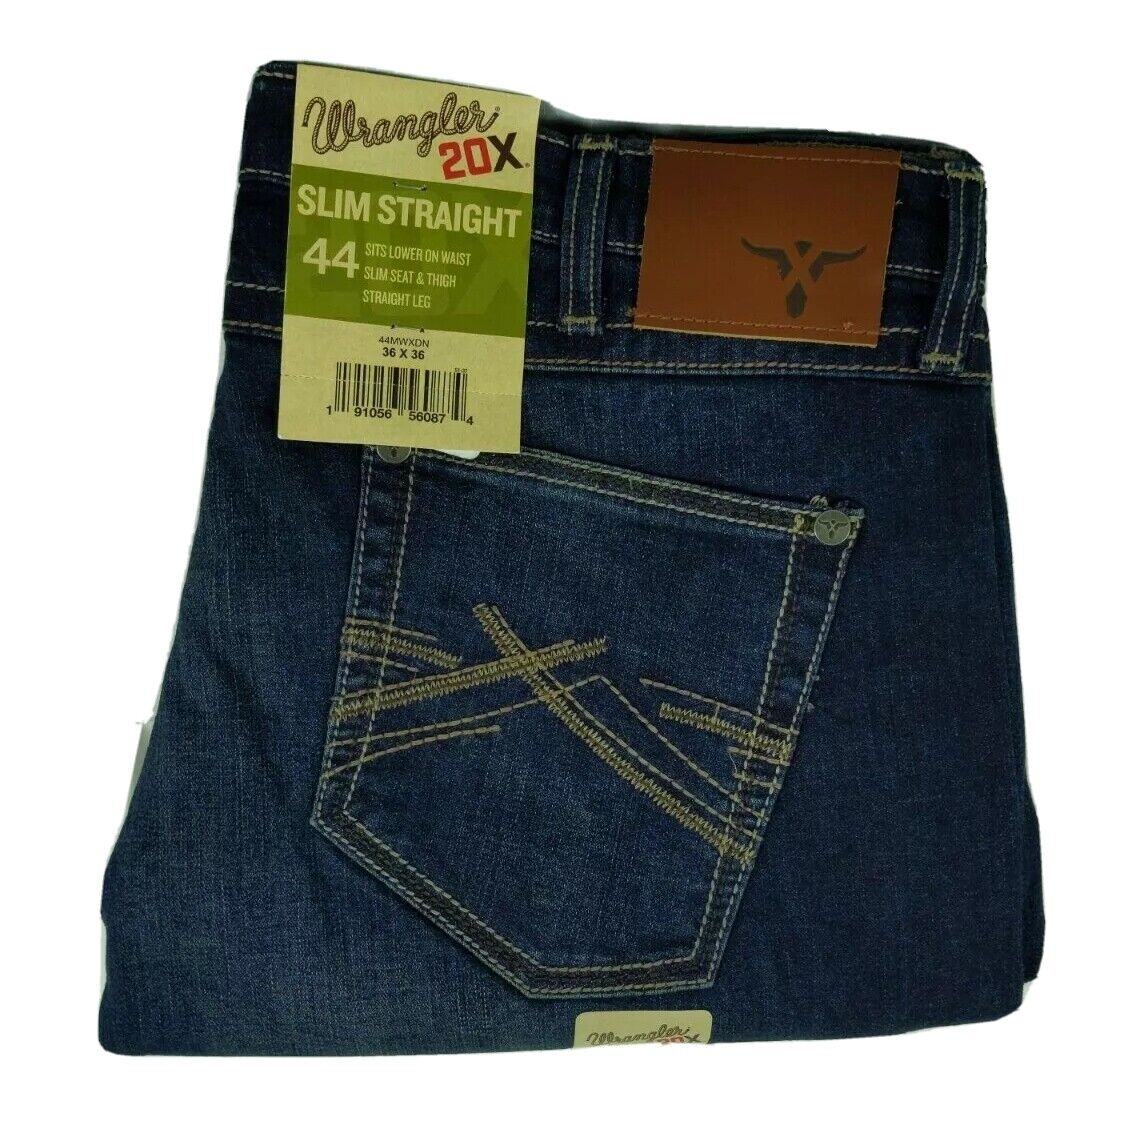 Wrangler 20X Men\'s Jeans Size 36x36 Slim Straight Fit 44 Blue Stretch Denim New